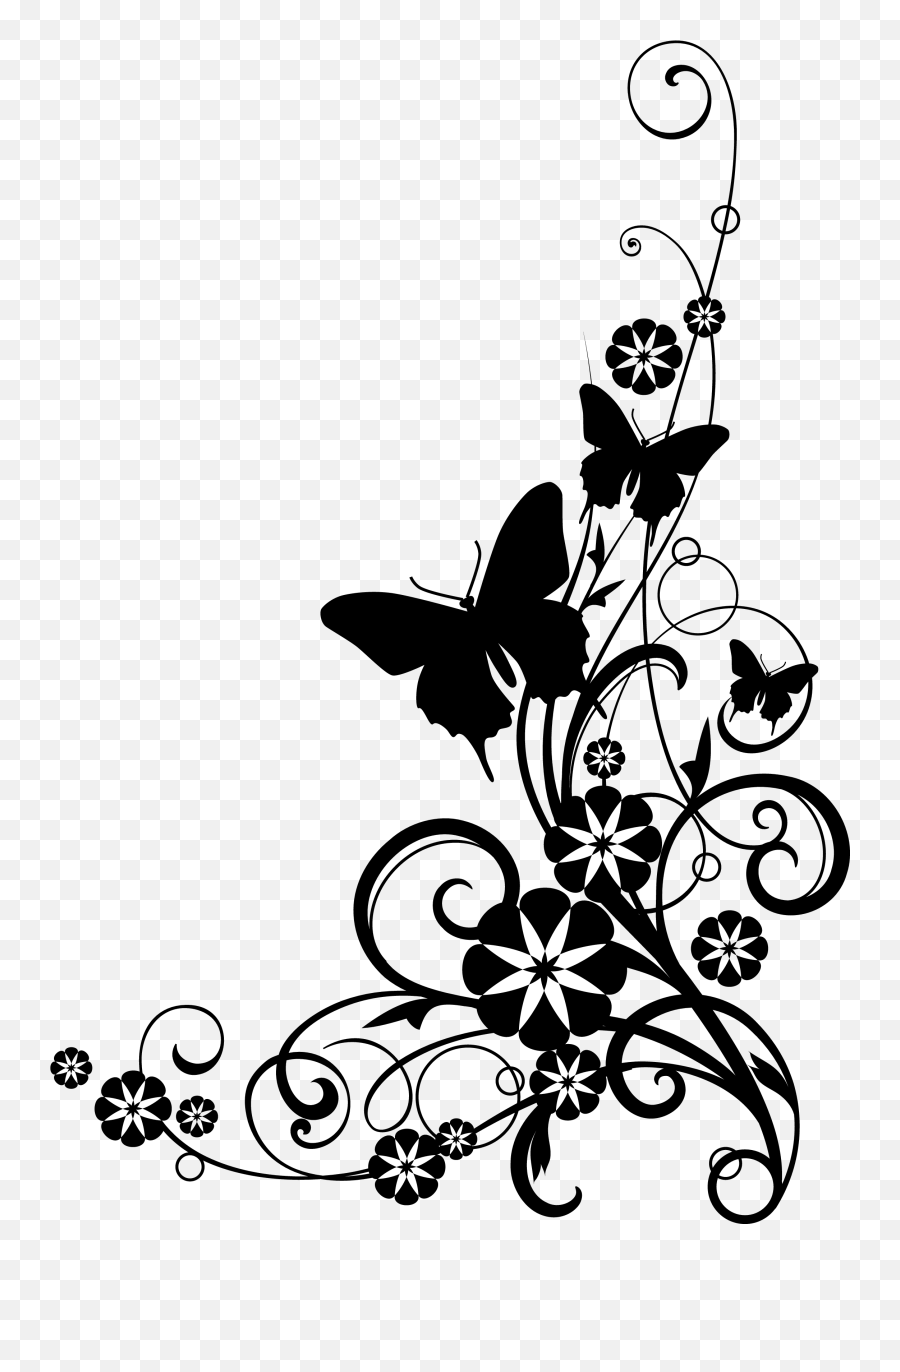 Flower Clipart Black And White Design - Butterfly Border Design Black And White Emoji,Reee Emoji